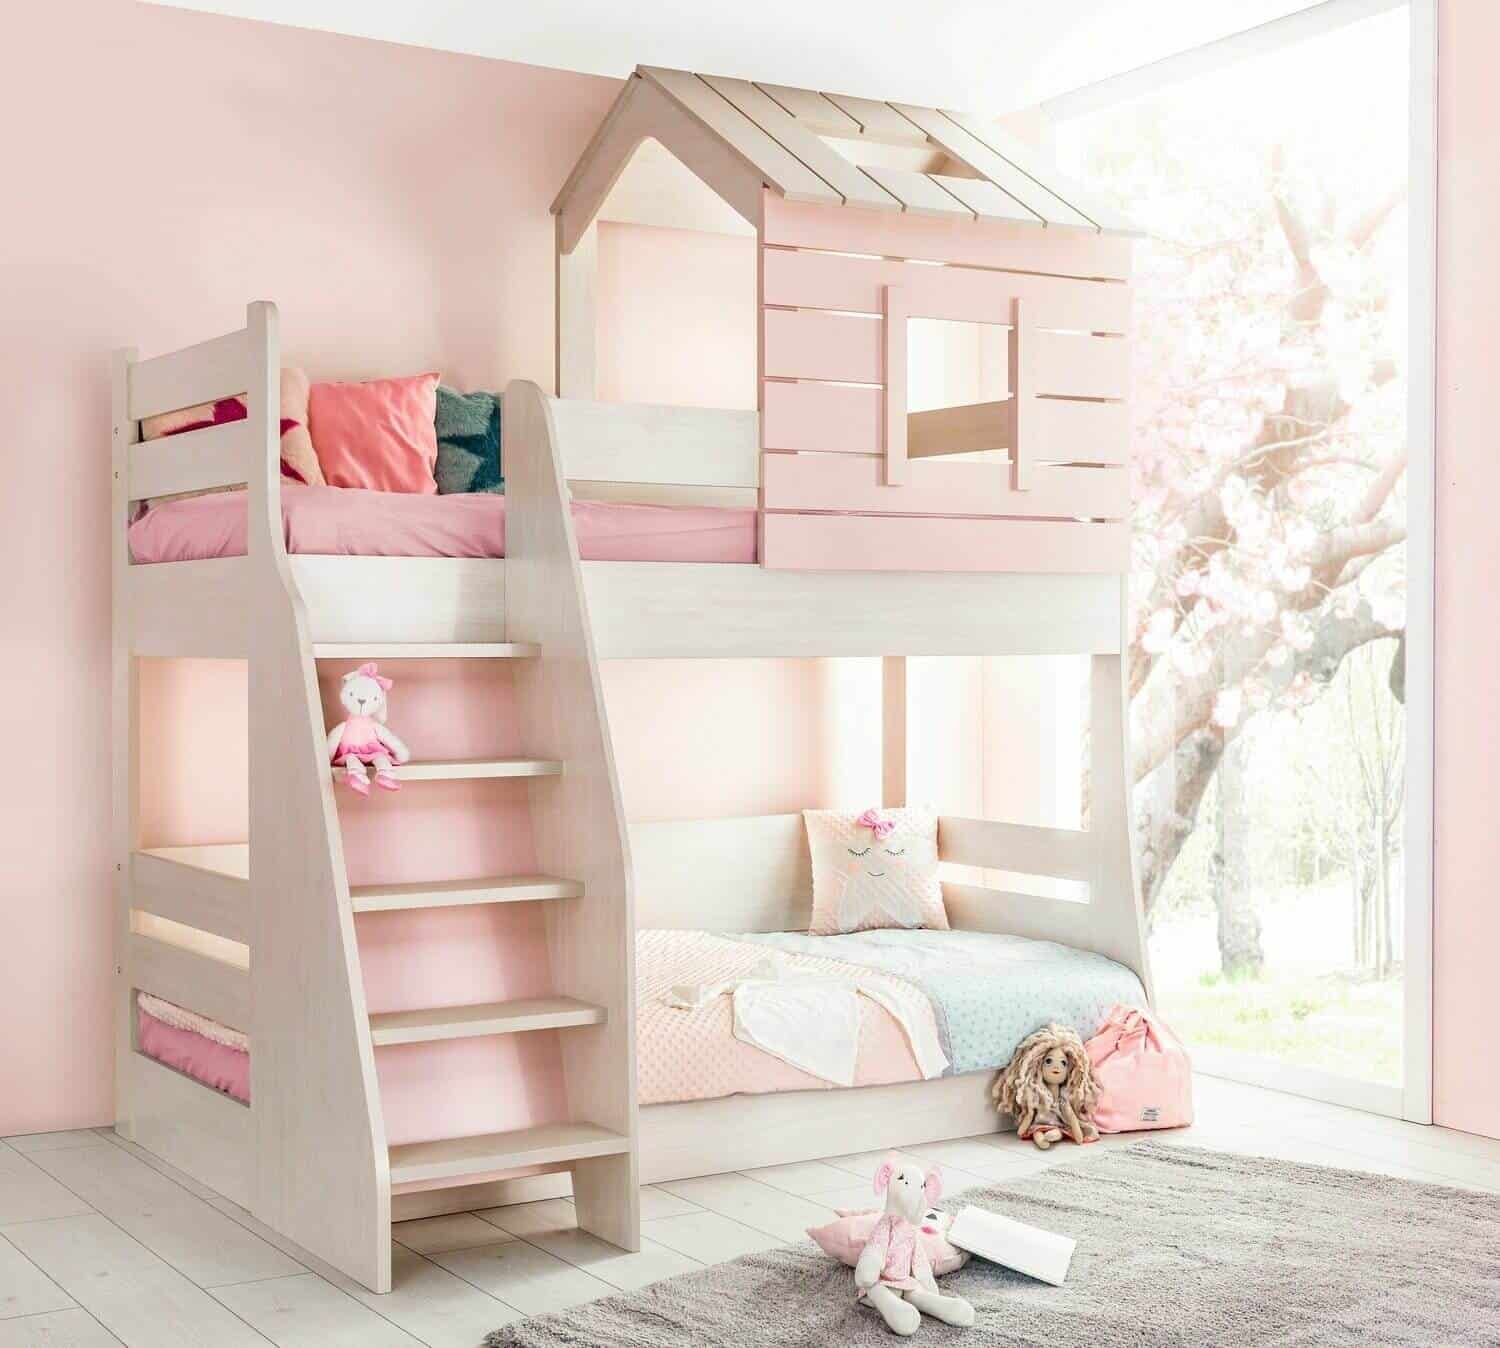 Giường tầng màu hồng cho bé gái